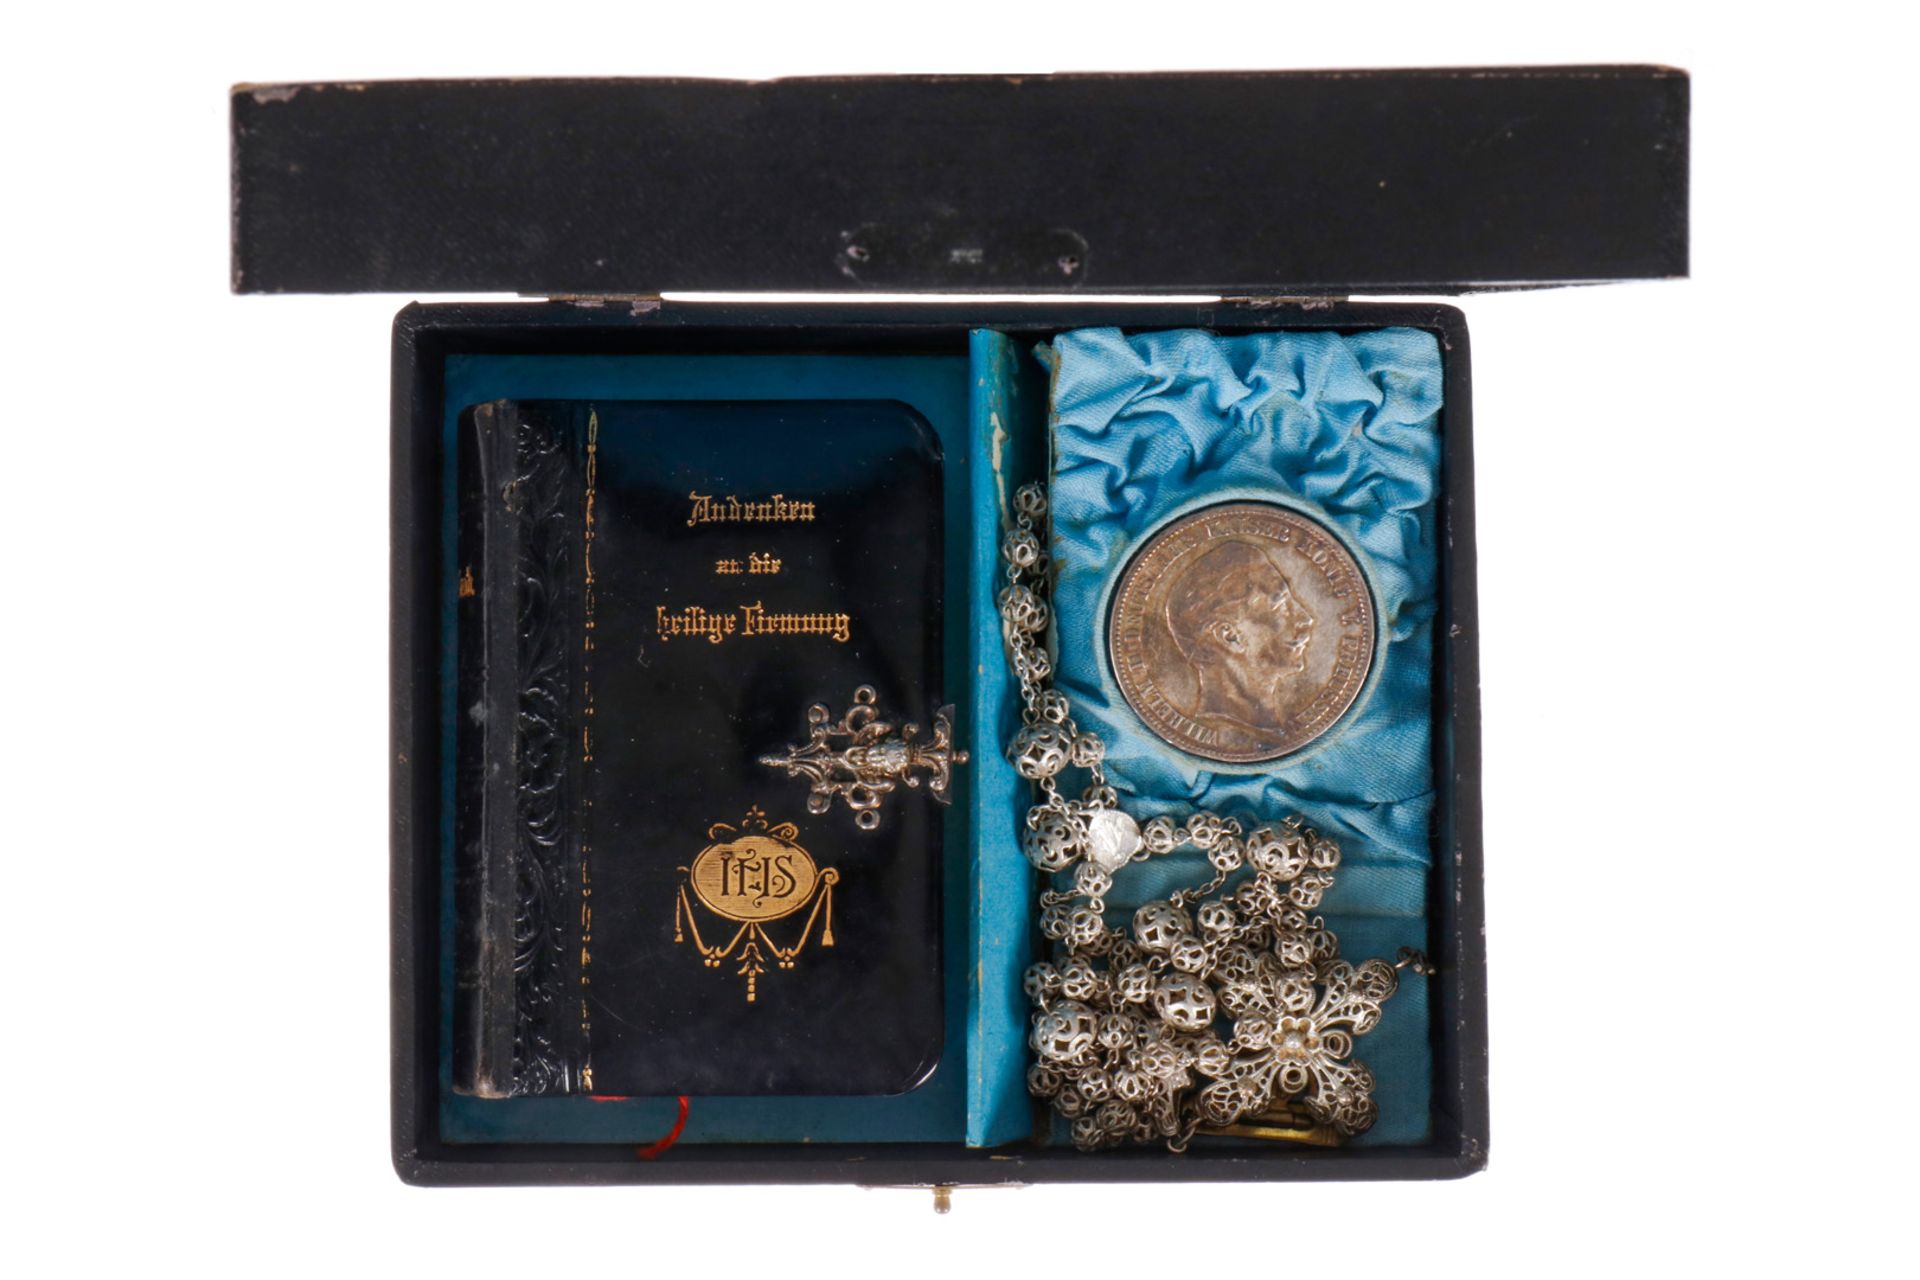 Etui ”Andenken an die heilige Firmung”, mit Gebetsbuch, Rosenkranz und 5 Mark Silbermünze Wilhelm